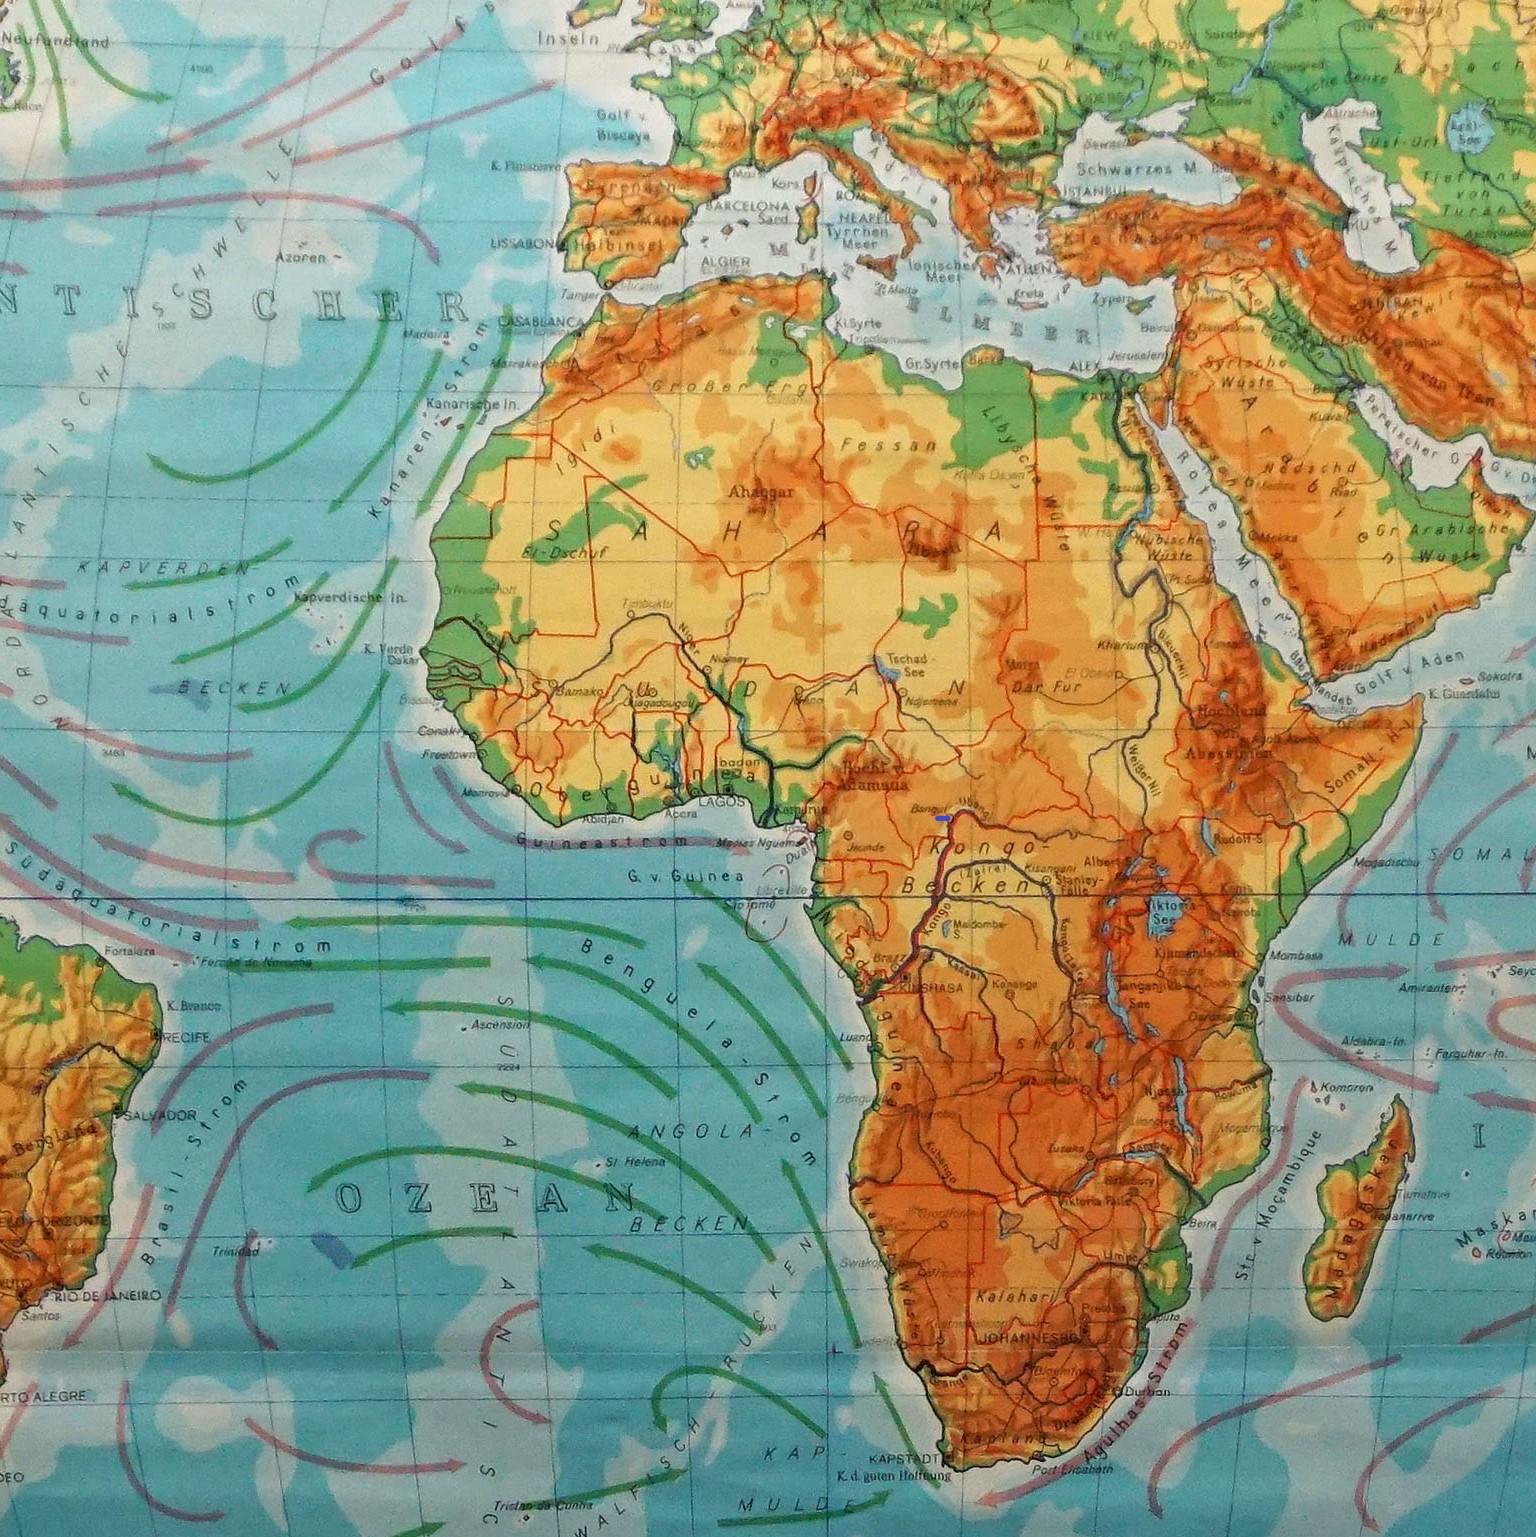 Eine große dekorative Weltkarte - genannt unsere Erde, eindrucksvolle Wandkartendekoration, herausgegeben von Justus Perthes. Farbenfroher Druck auf mit Leinwand verstärktem Papier.
Abmessungen:
Breite 210 cm (82,68 Zoll)
Höhe 126,50cm (49.80